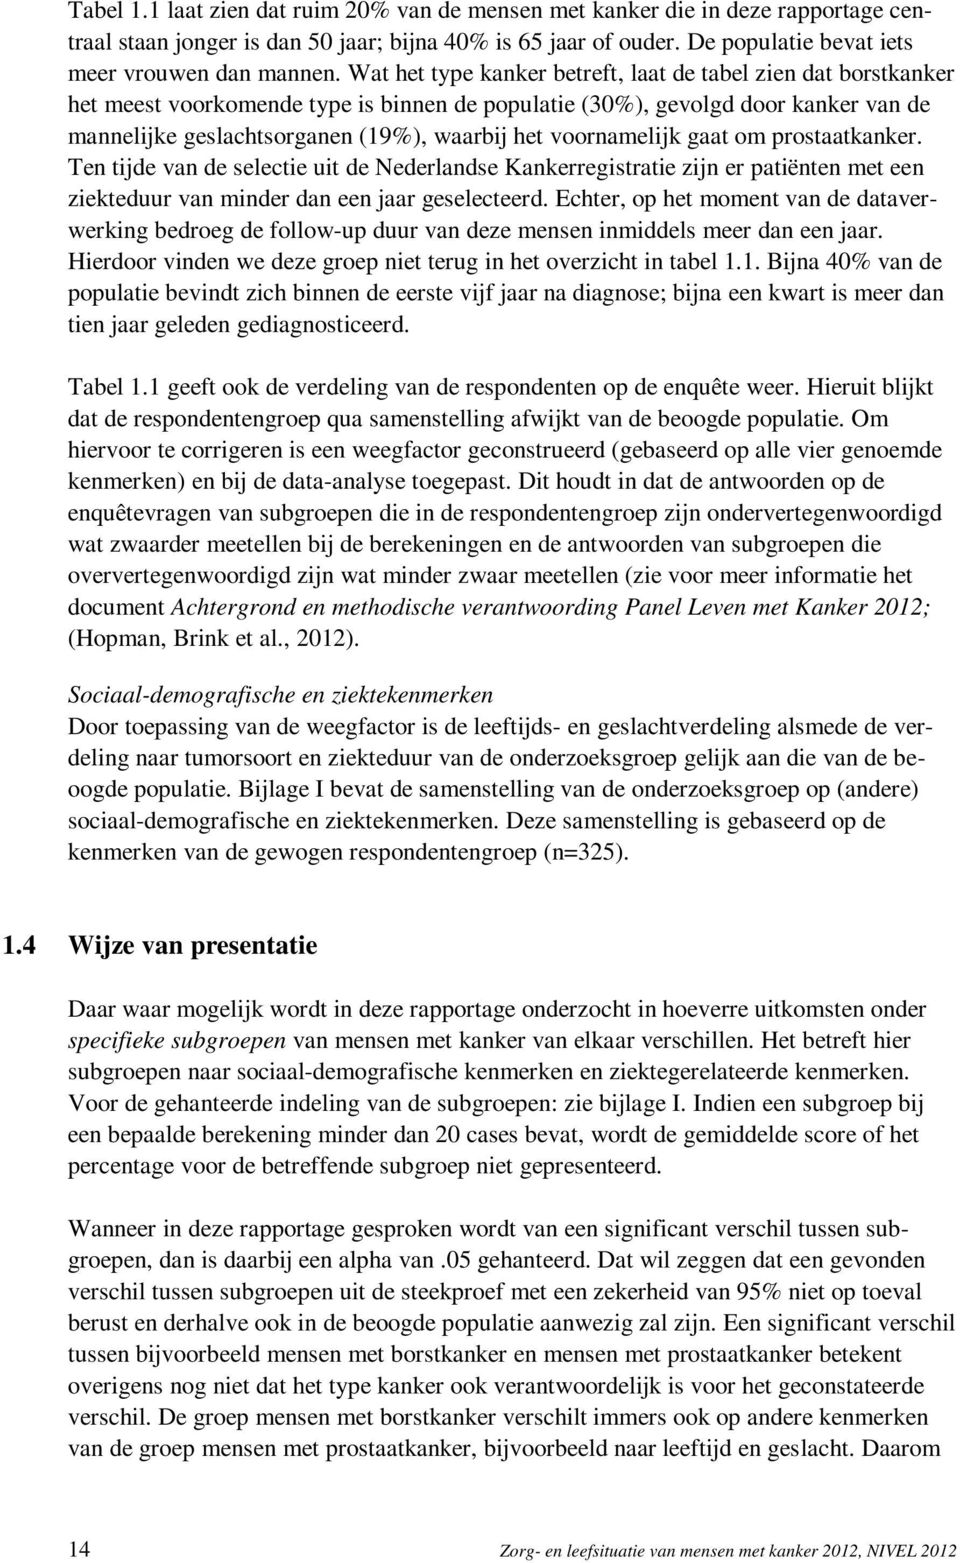 voornamelijk gaat om prostaatkanker. Ten tijde van de selectie uit de Nederlandse Kankerregistratie zijn er patiënten met een ziekteduur van minder dan een jaar geselecteerd.